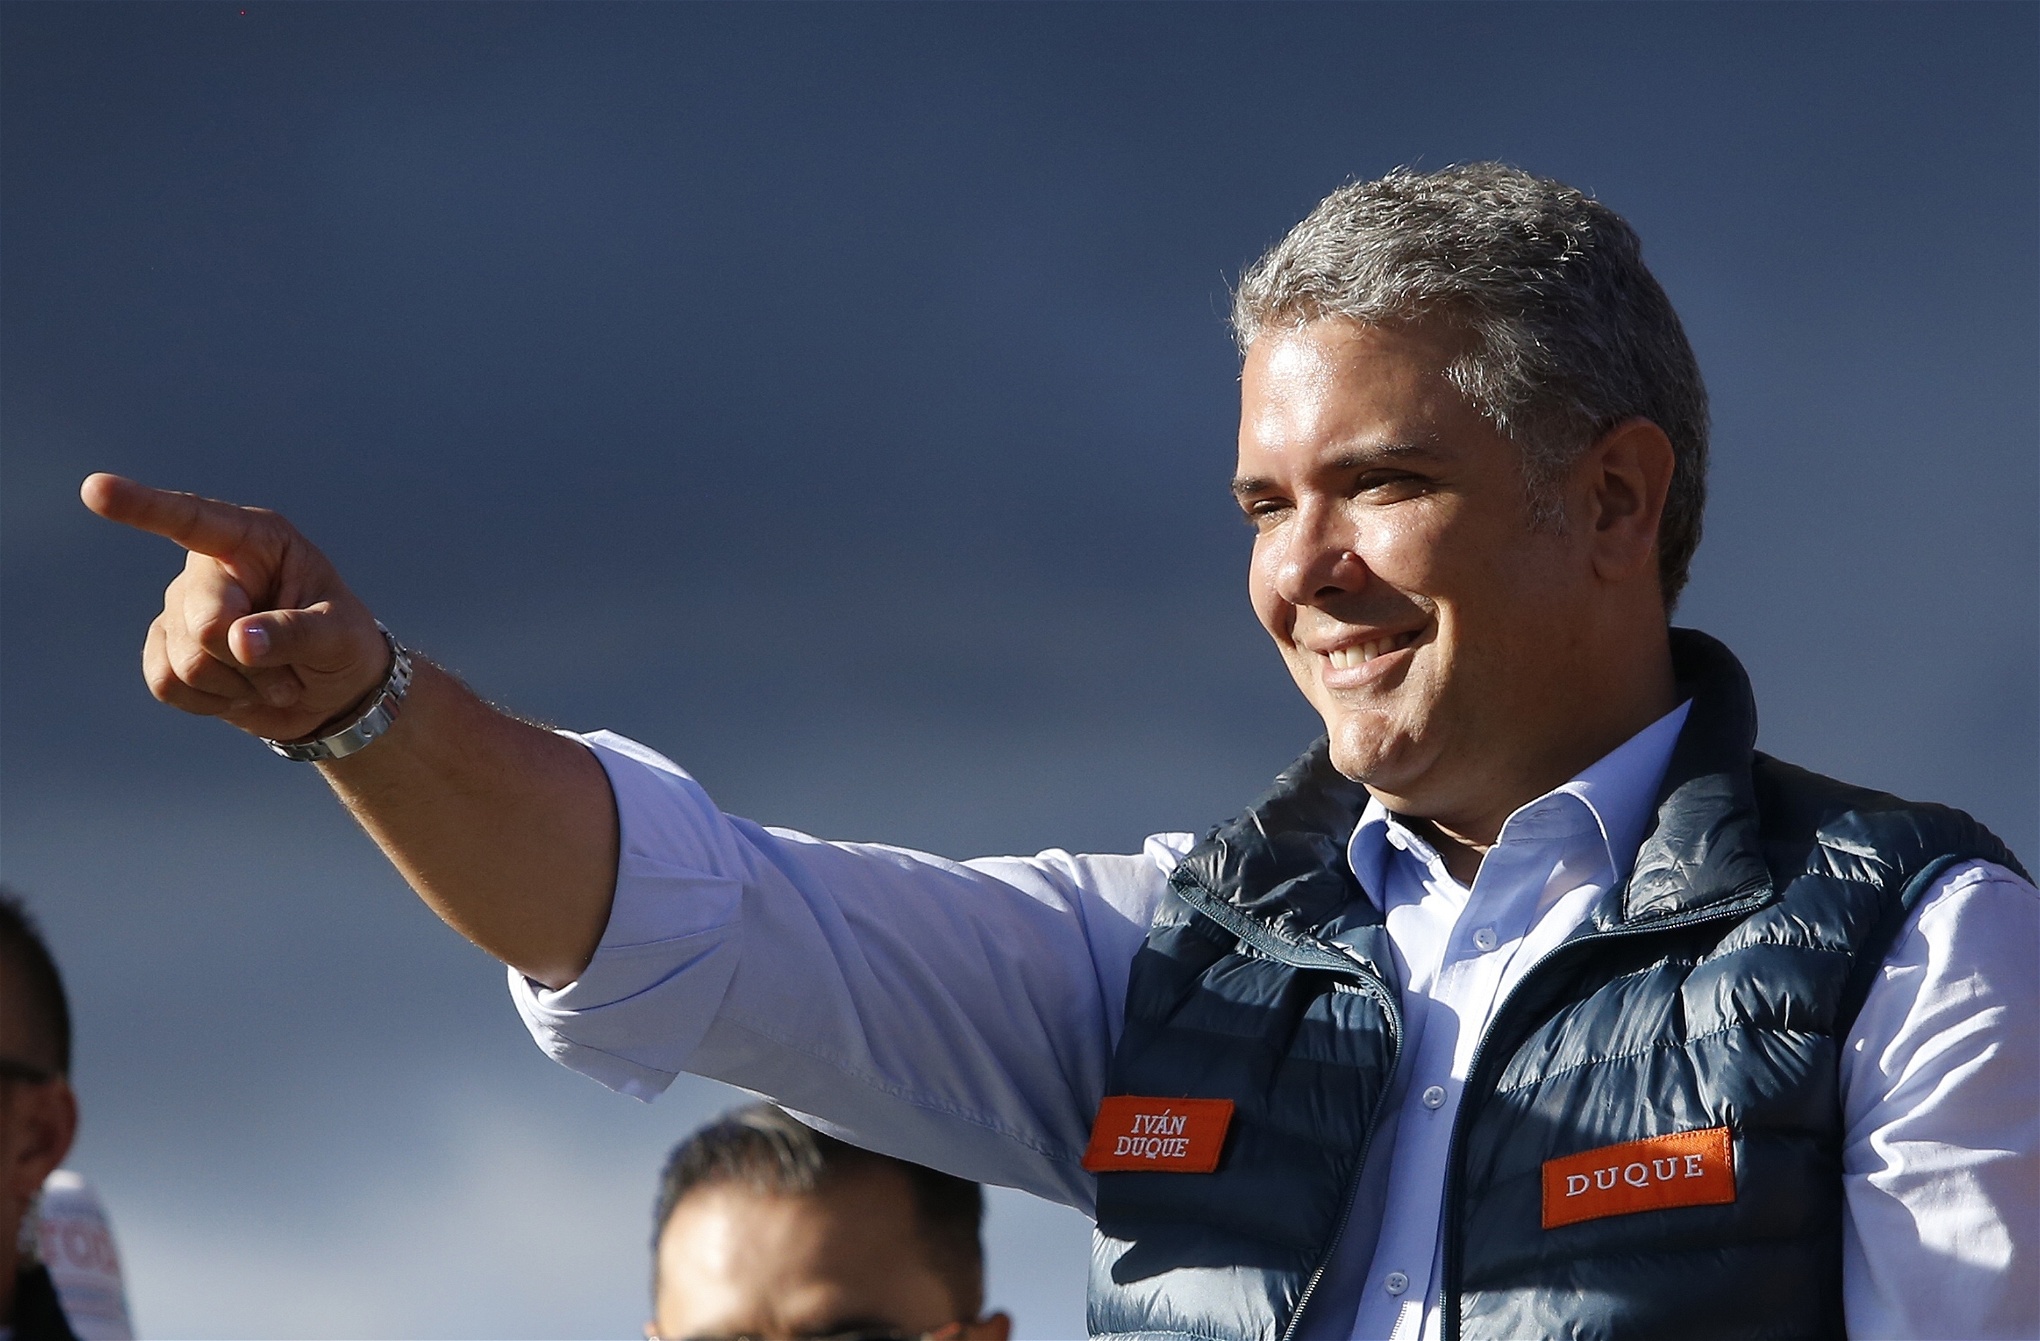 Högerns kandidat Iván Duque lockar till sig äldre väljare och har i princip lovat att skrota fredsavtalet.